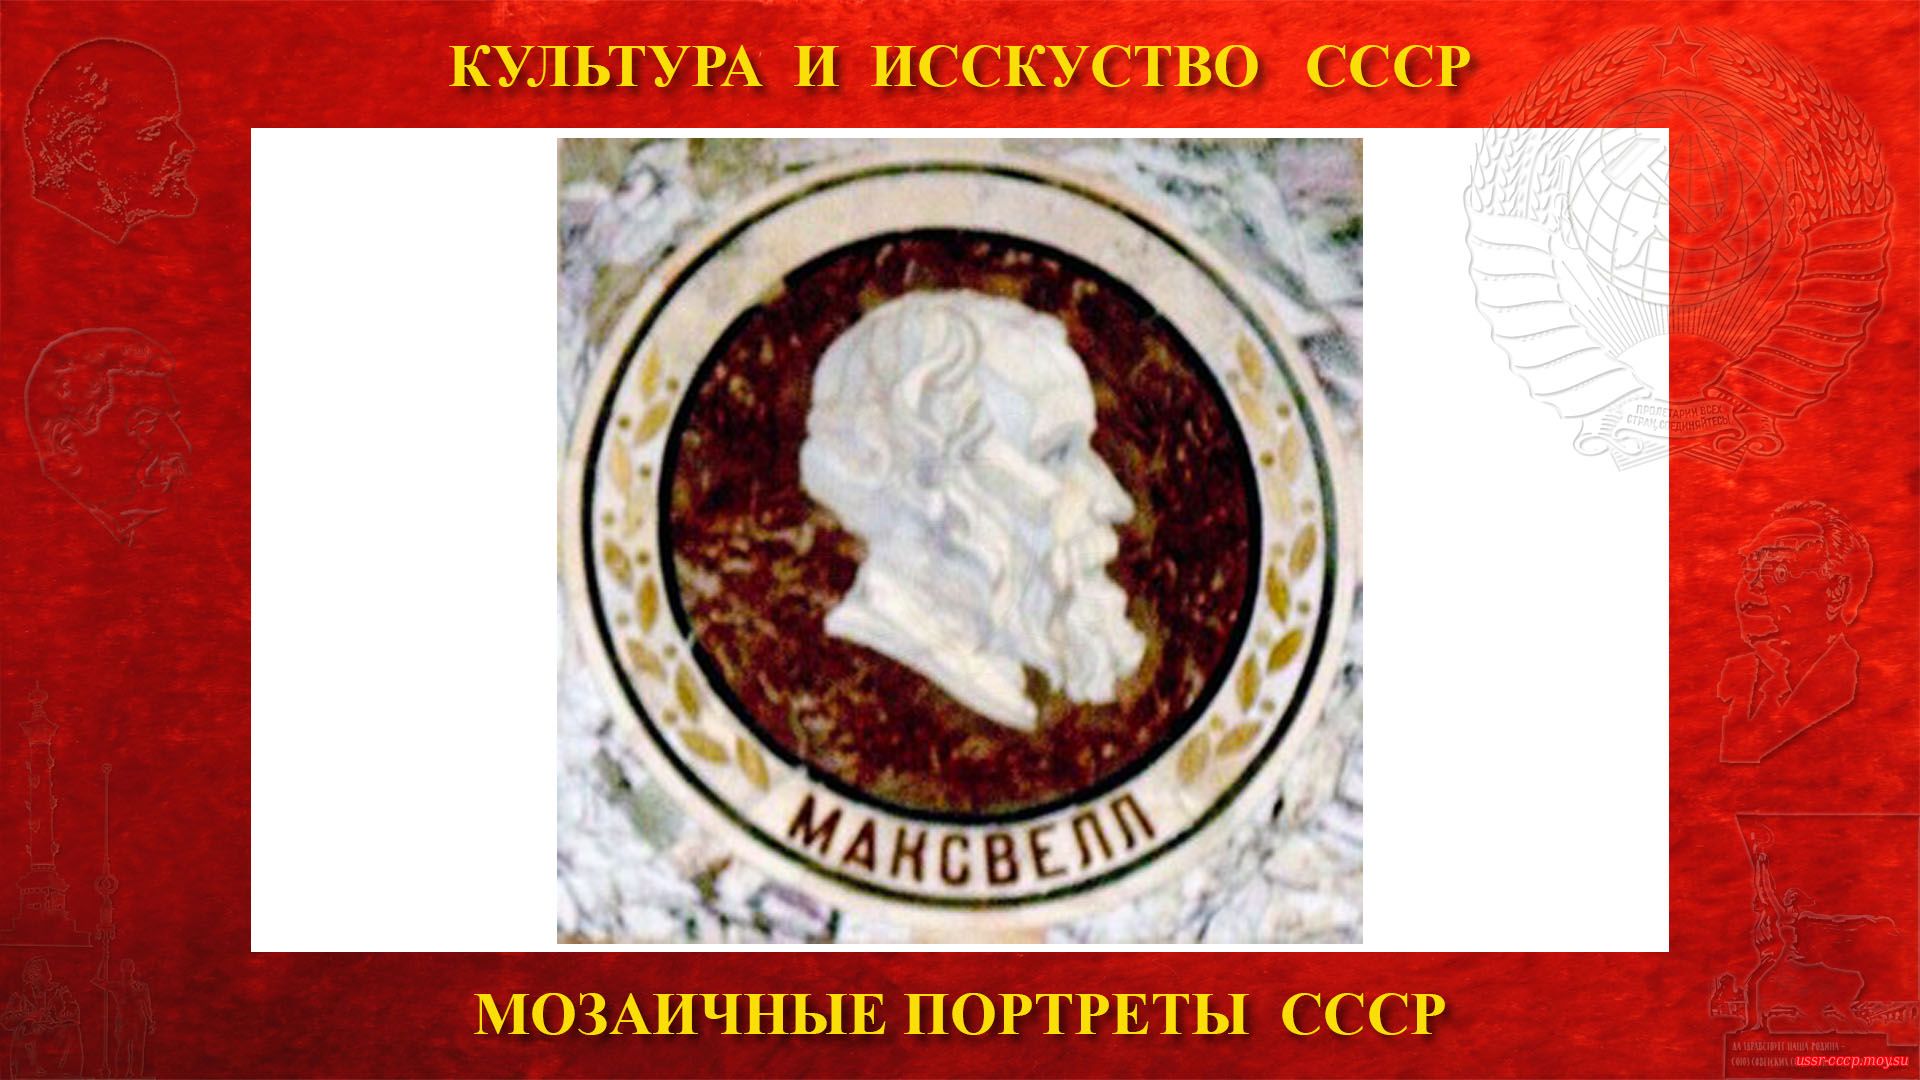 Мозаичный портрет Максвеллу Д.К. на Ленинских горах в ГЗ МГУ (Москва 1953) (Повествование)